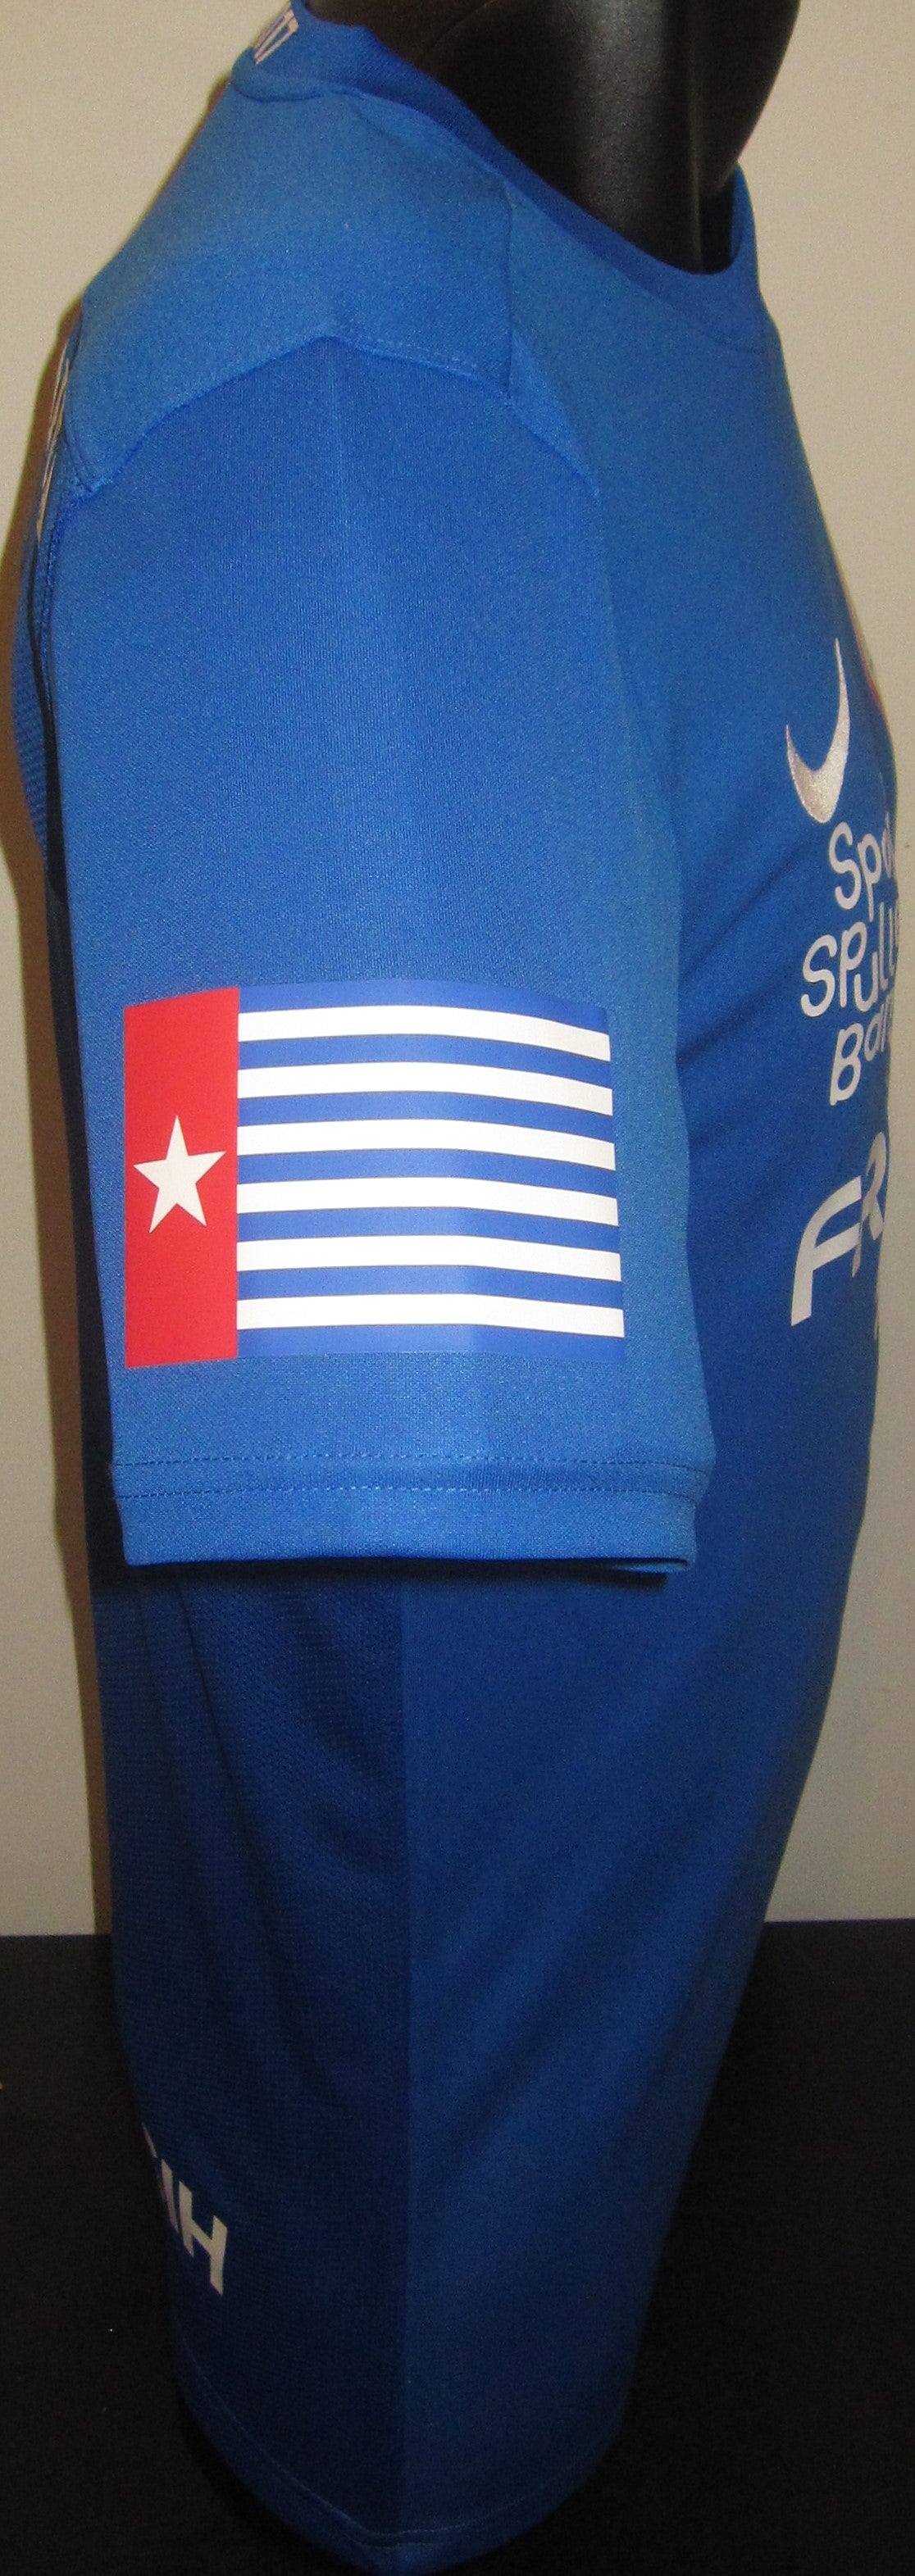 West Papua 2022-23 Home (#9) Jersey/Shirt